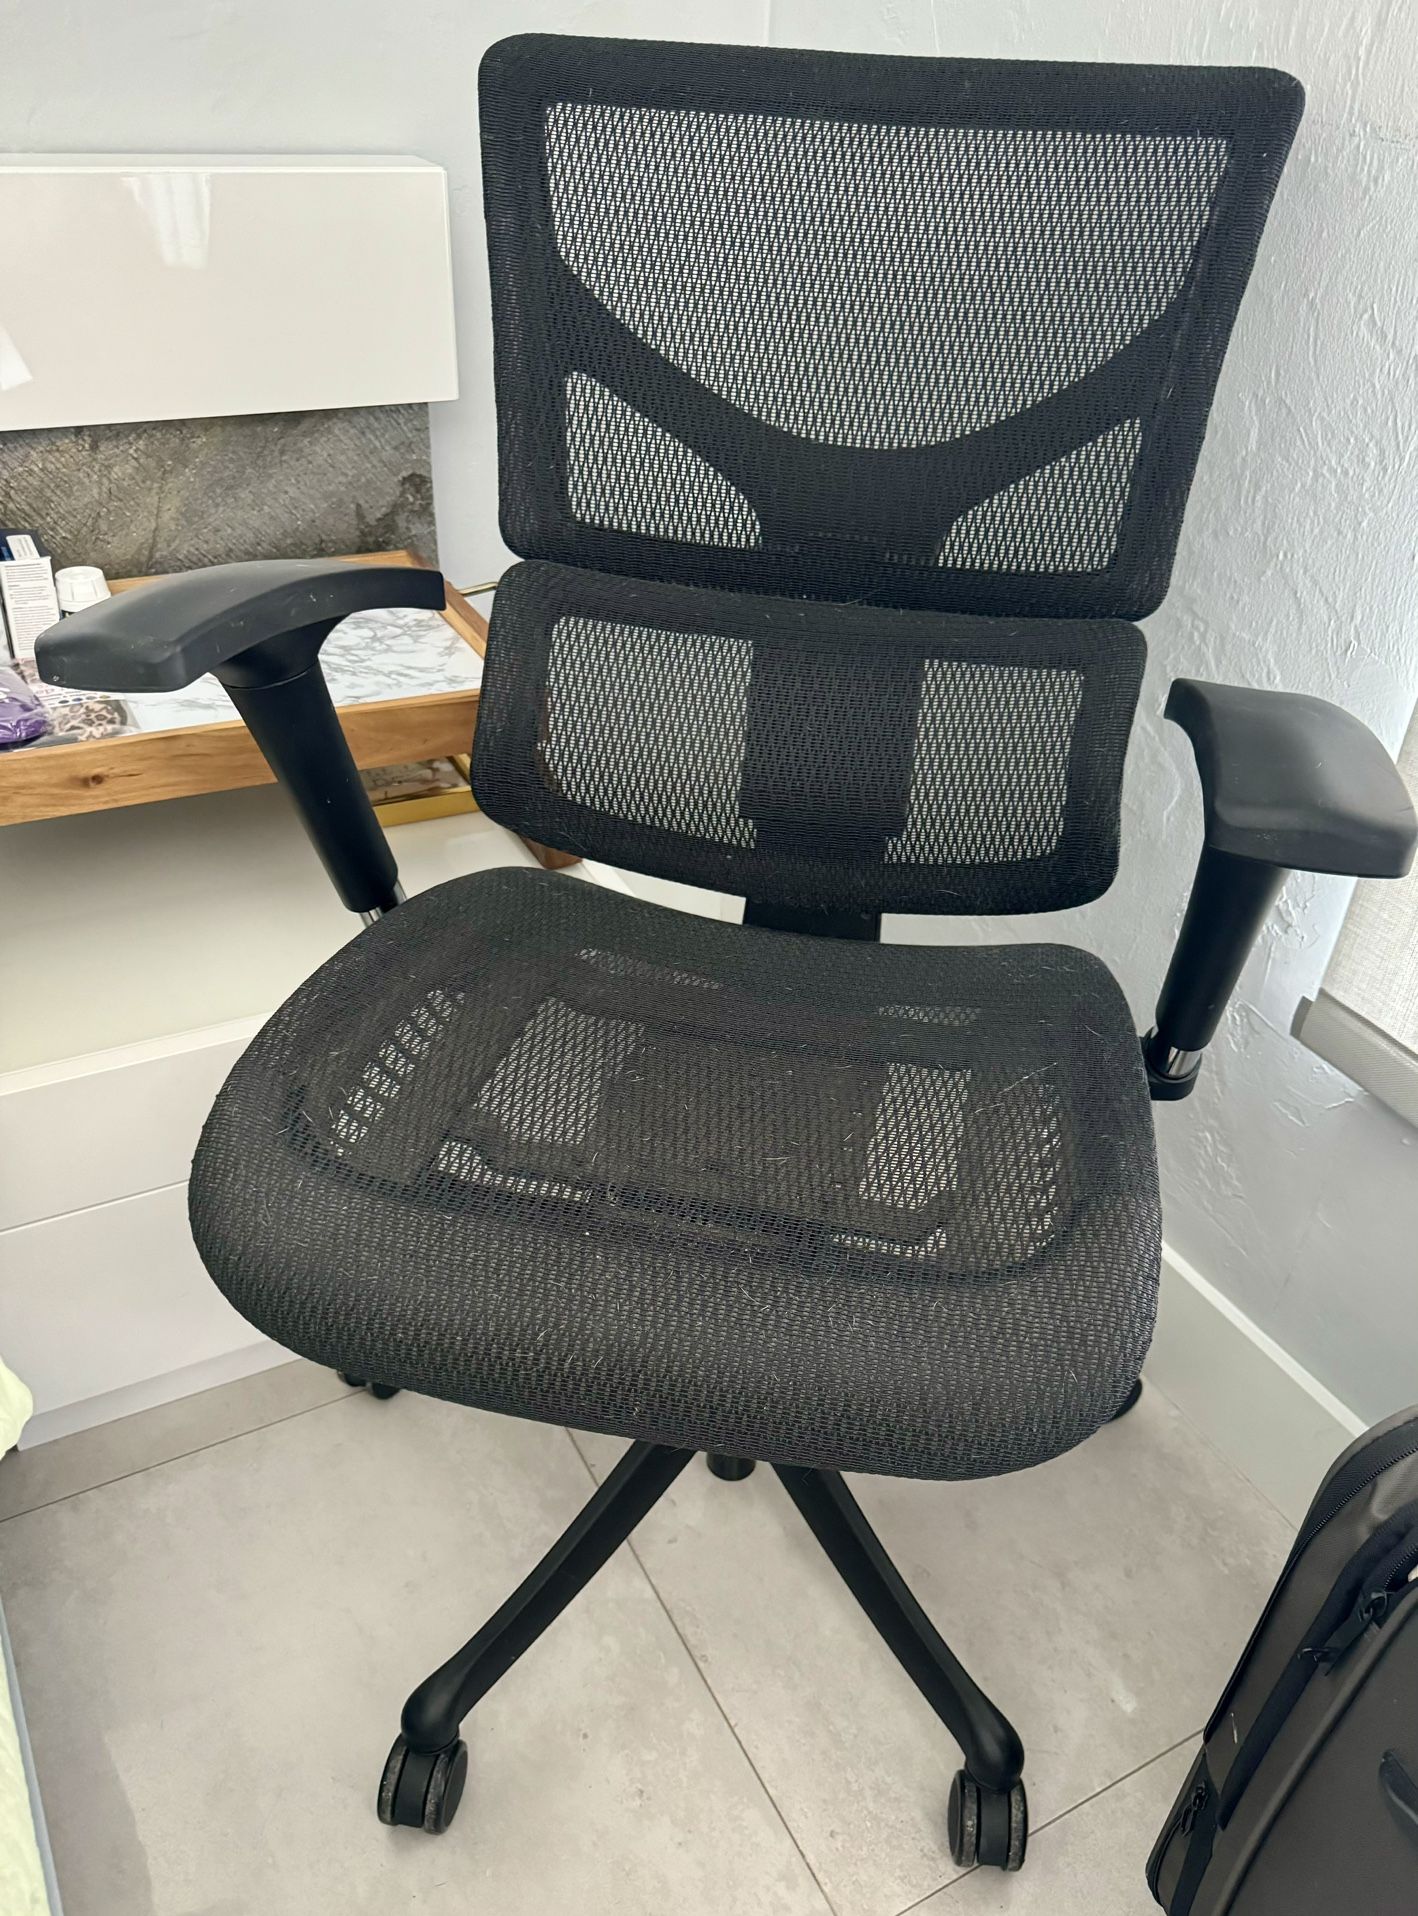 X Chair Office Chair